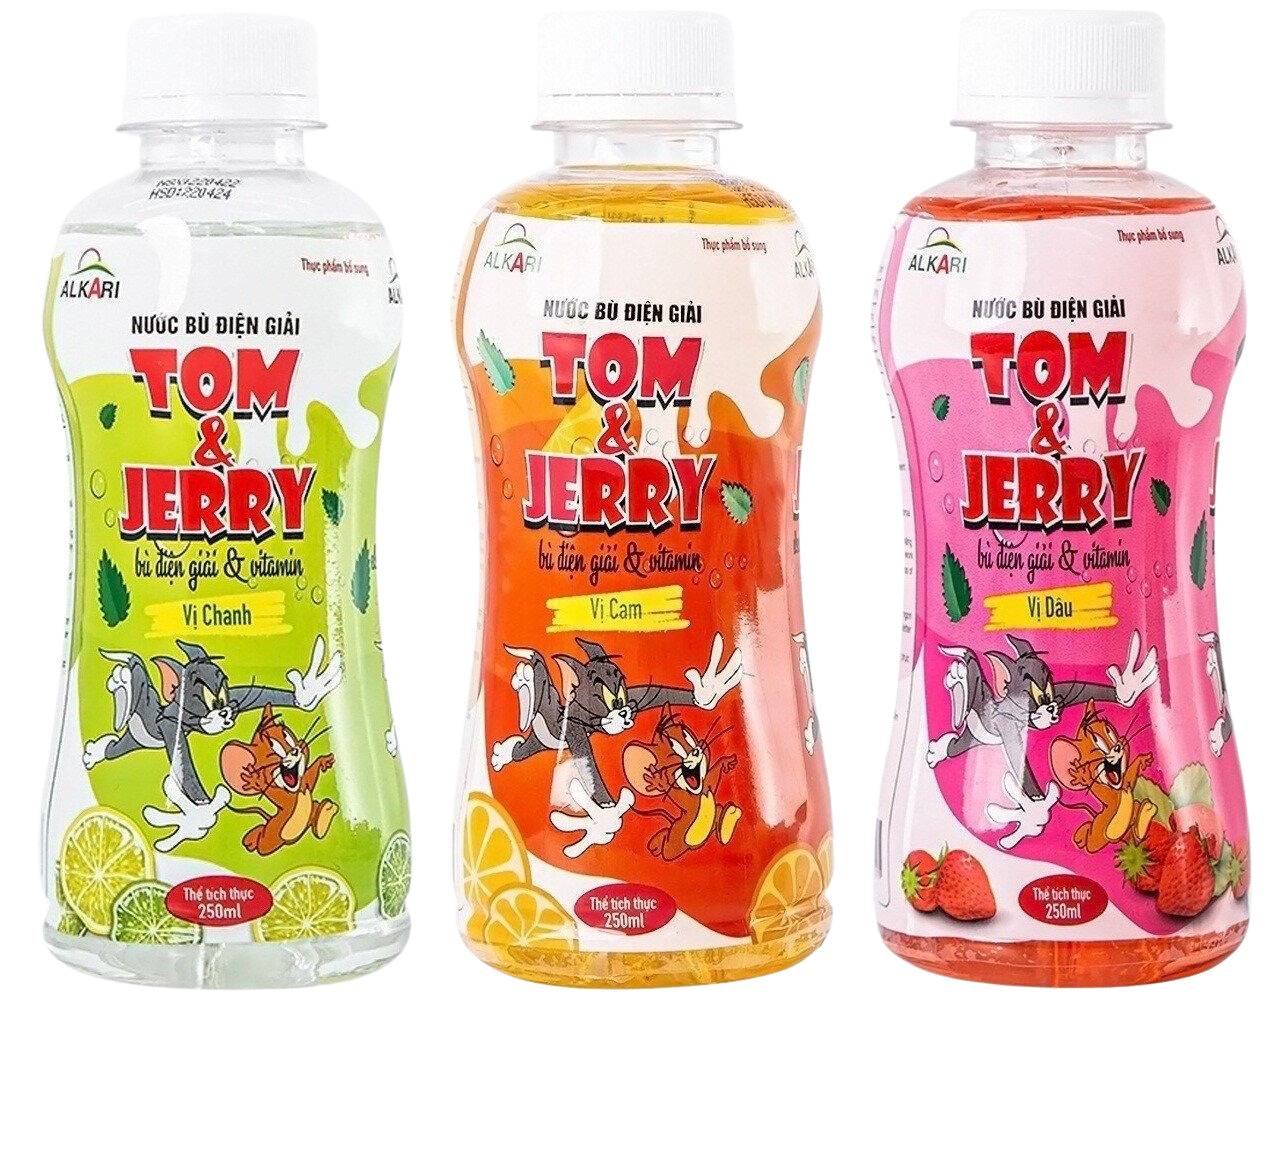 ￼Nước điện giải vị chanh Tom & Jerry ( thùng 24 chai * 250ml) - Phục hồi sức khoẻ, bù nước và chất điện gi